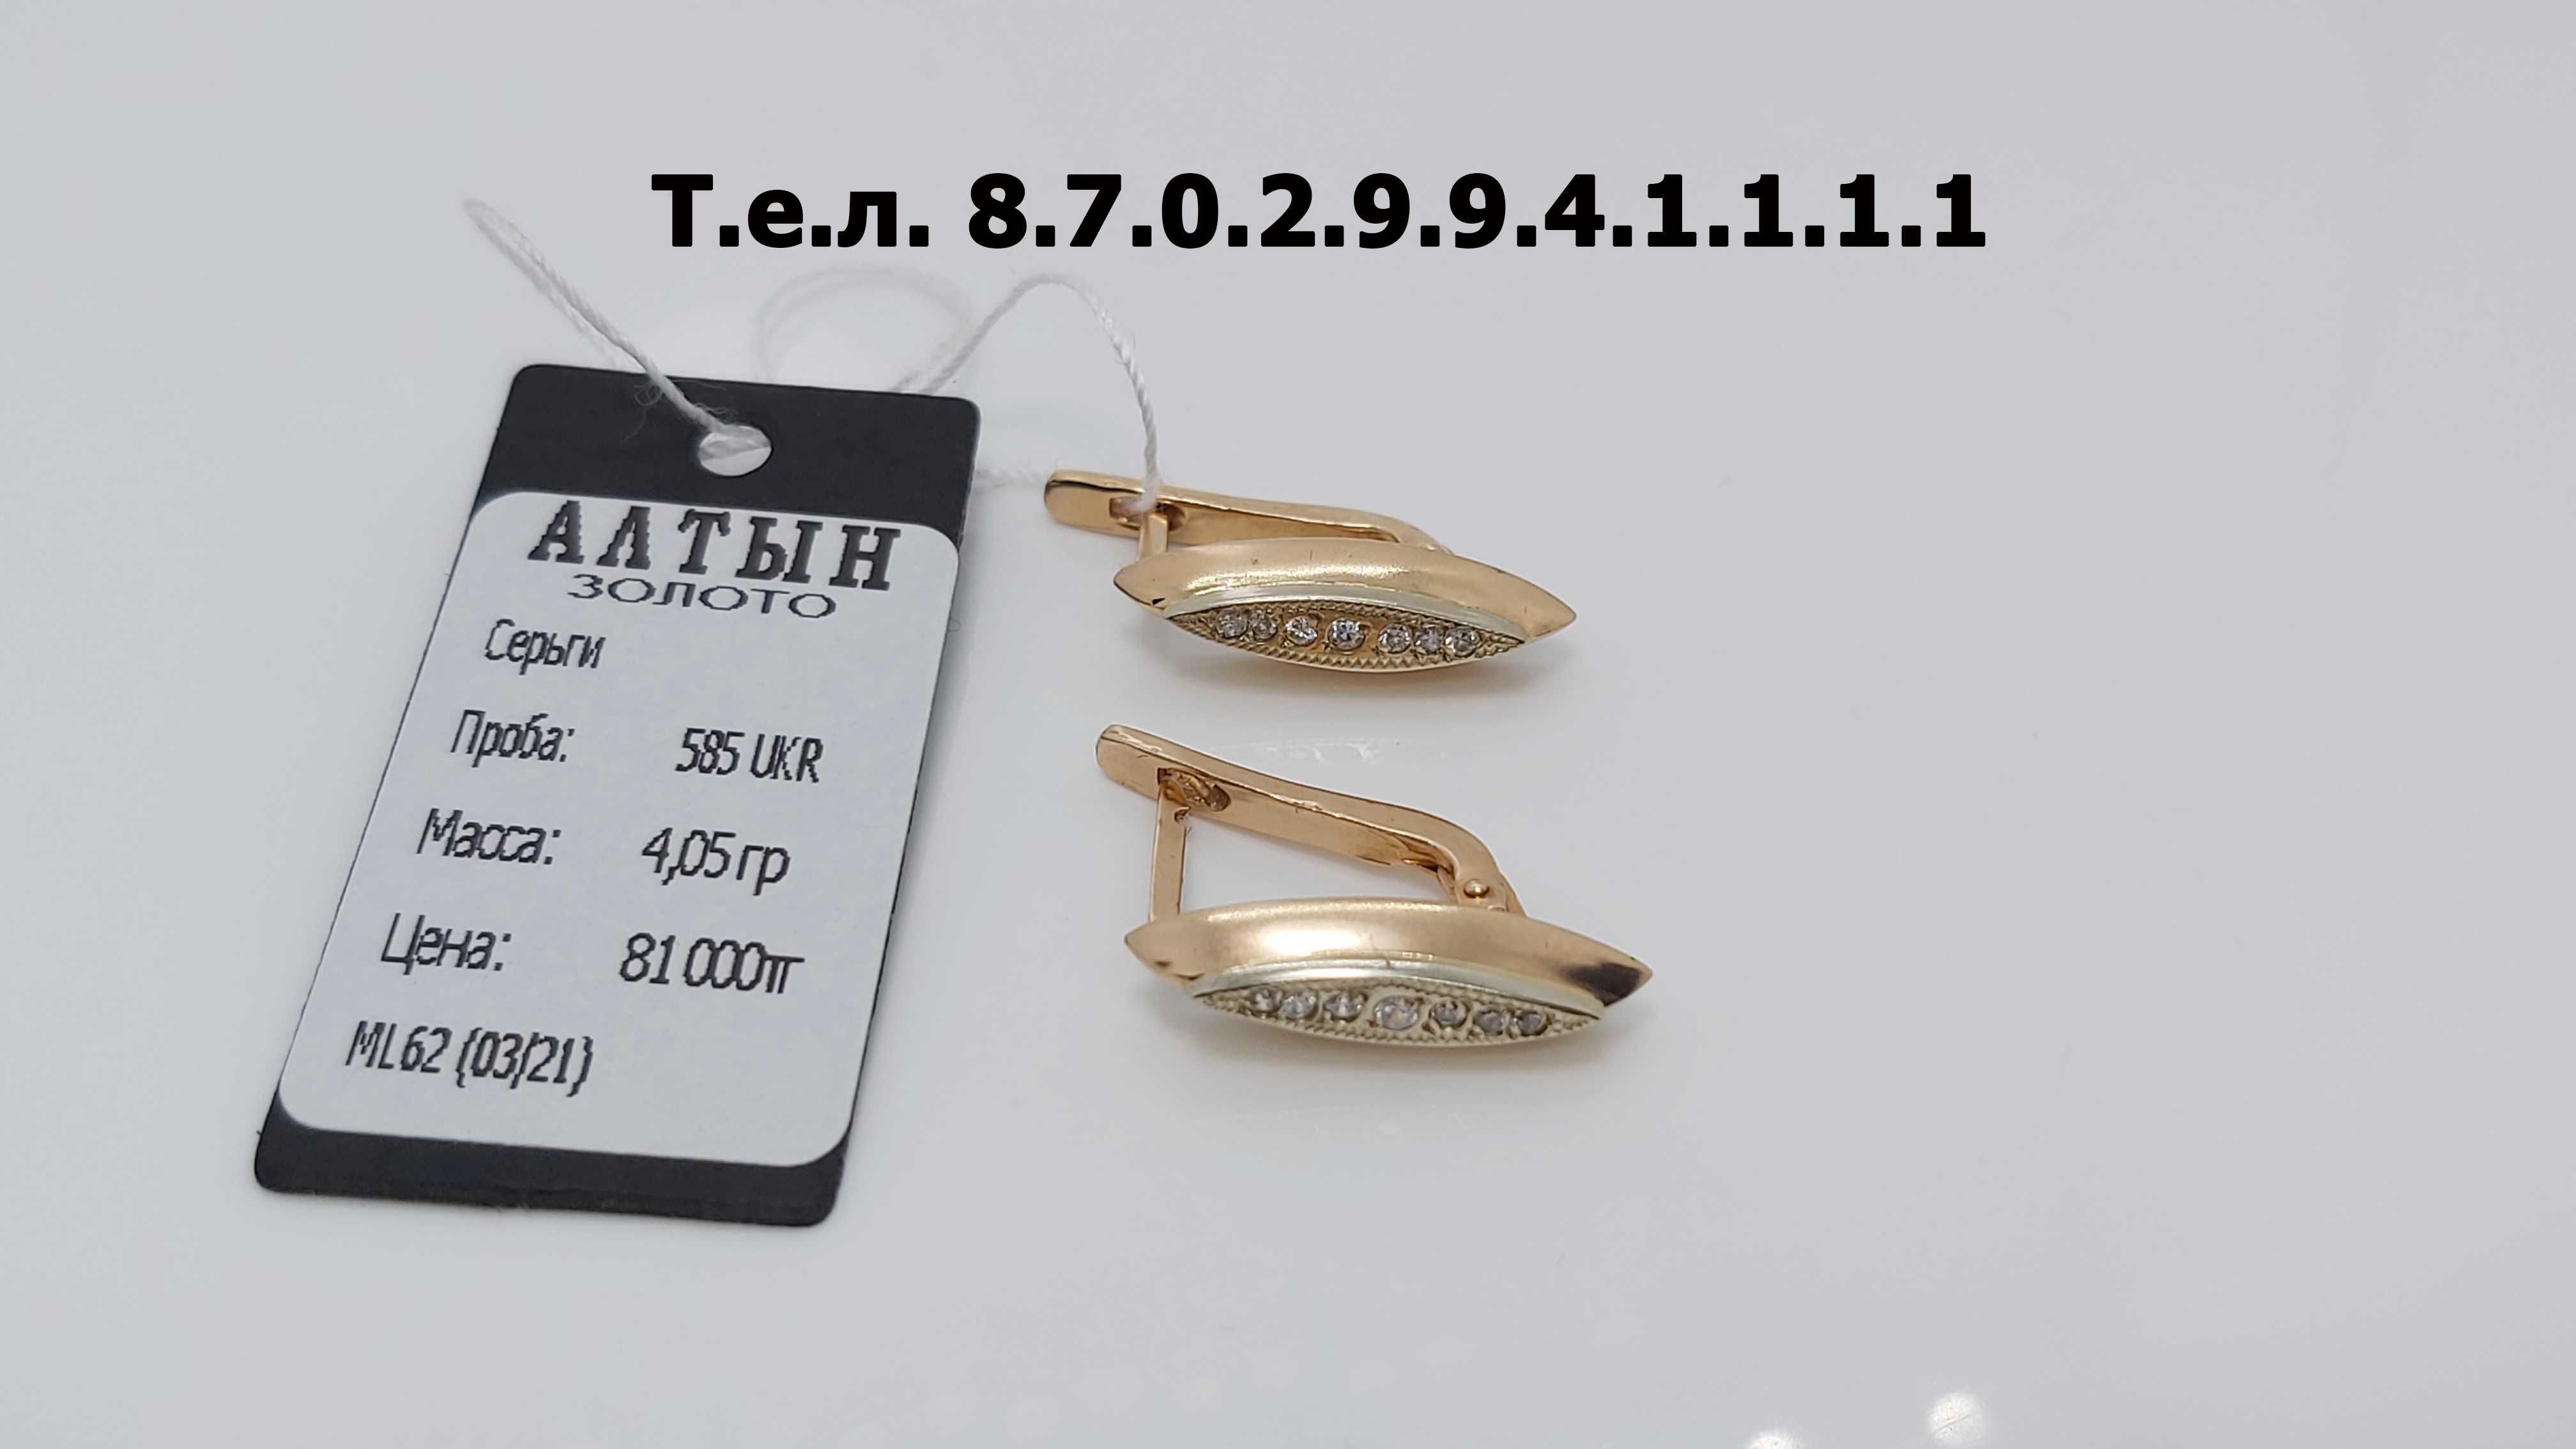 Серьги золотые, проба 585 UKR, состояние новое, антиквариат